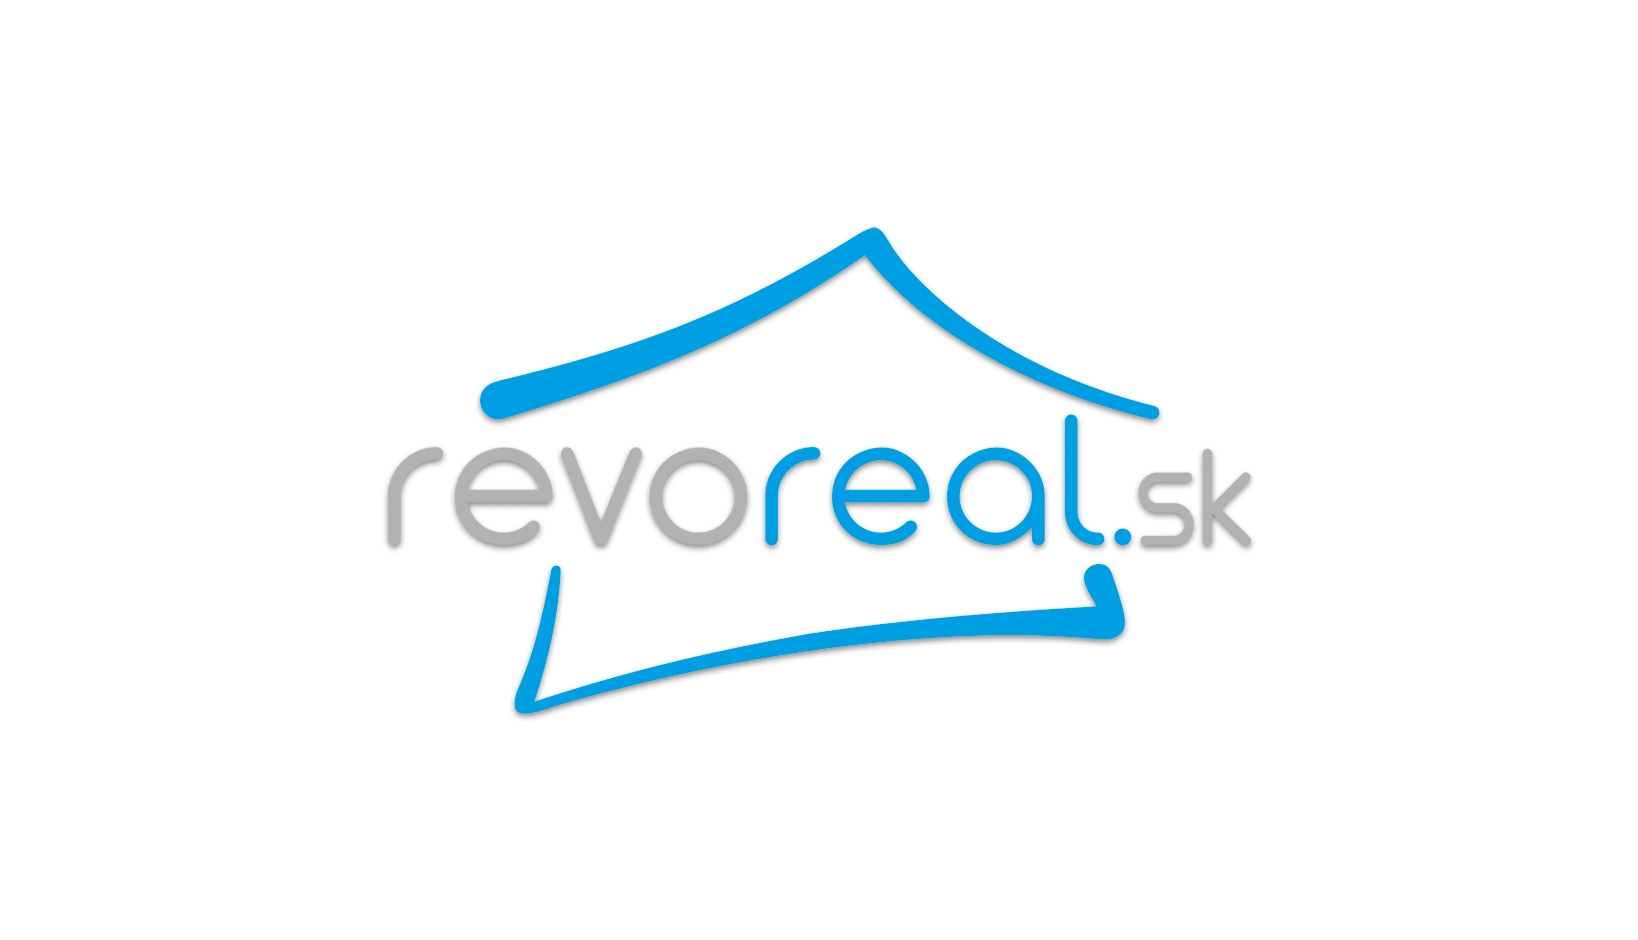 Revoreal logo